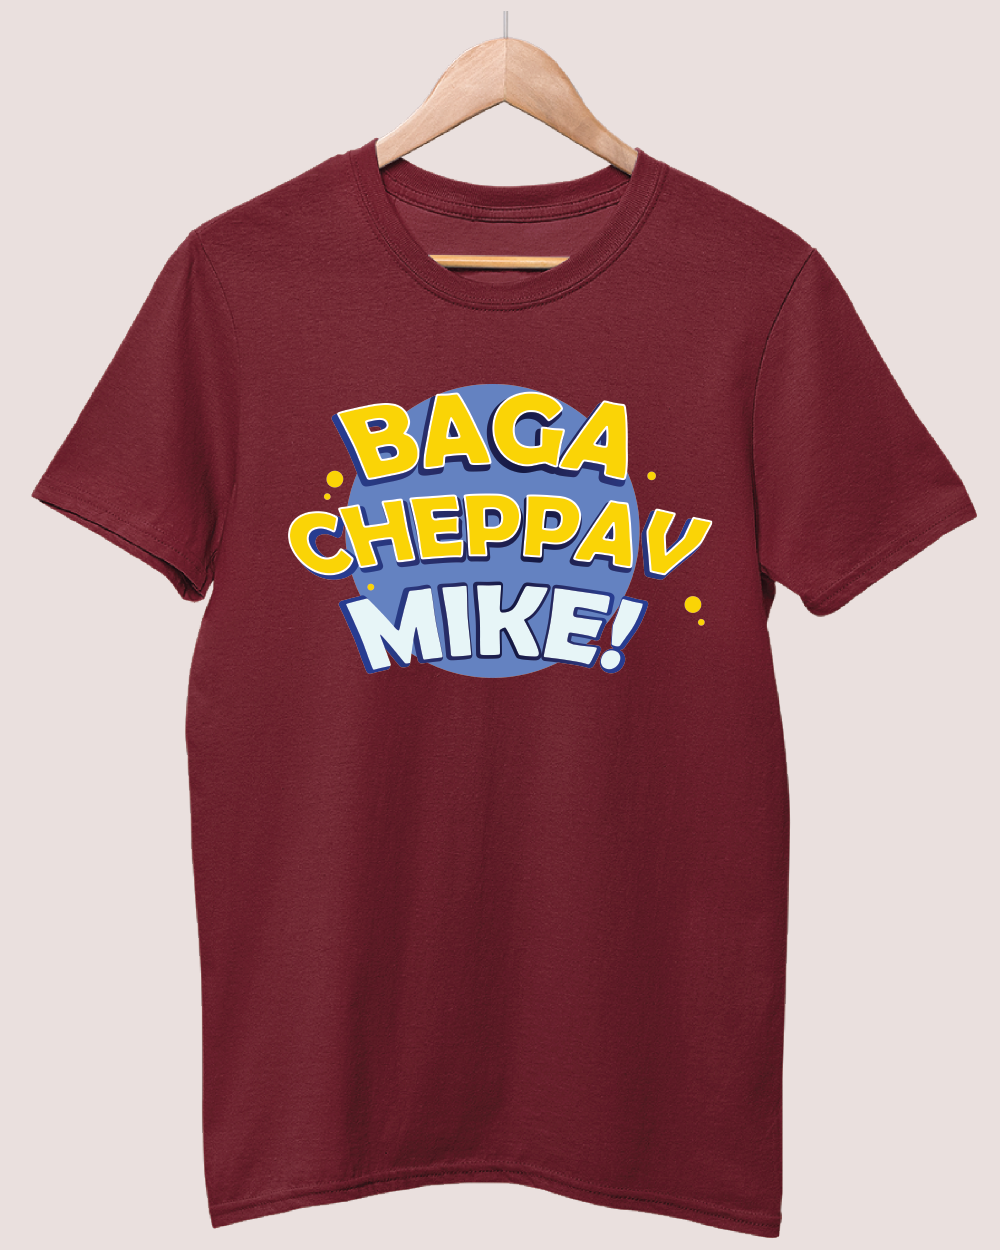 Baaga cheppav mike T-shirt